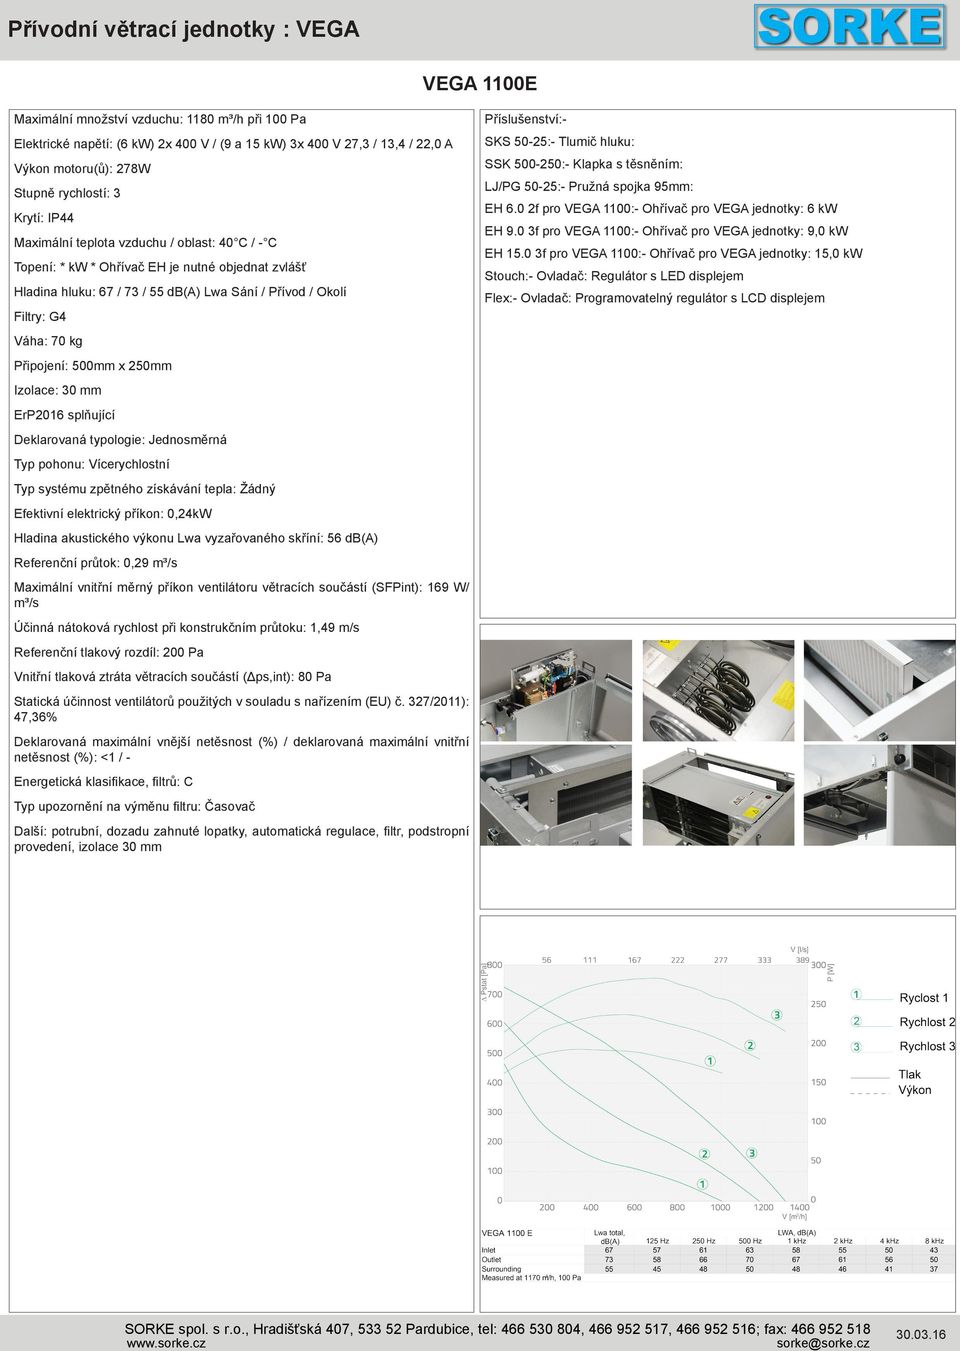 250mm Izolace: 30 mm ErP2016 splňující Deklarovaná typologie: Jednosměrná Typ pohonu: Vícerychlostní Typ systému zpětného získávání tepla: Žádný Efektivní elektrický příkon: 0,24kW Hladina